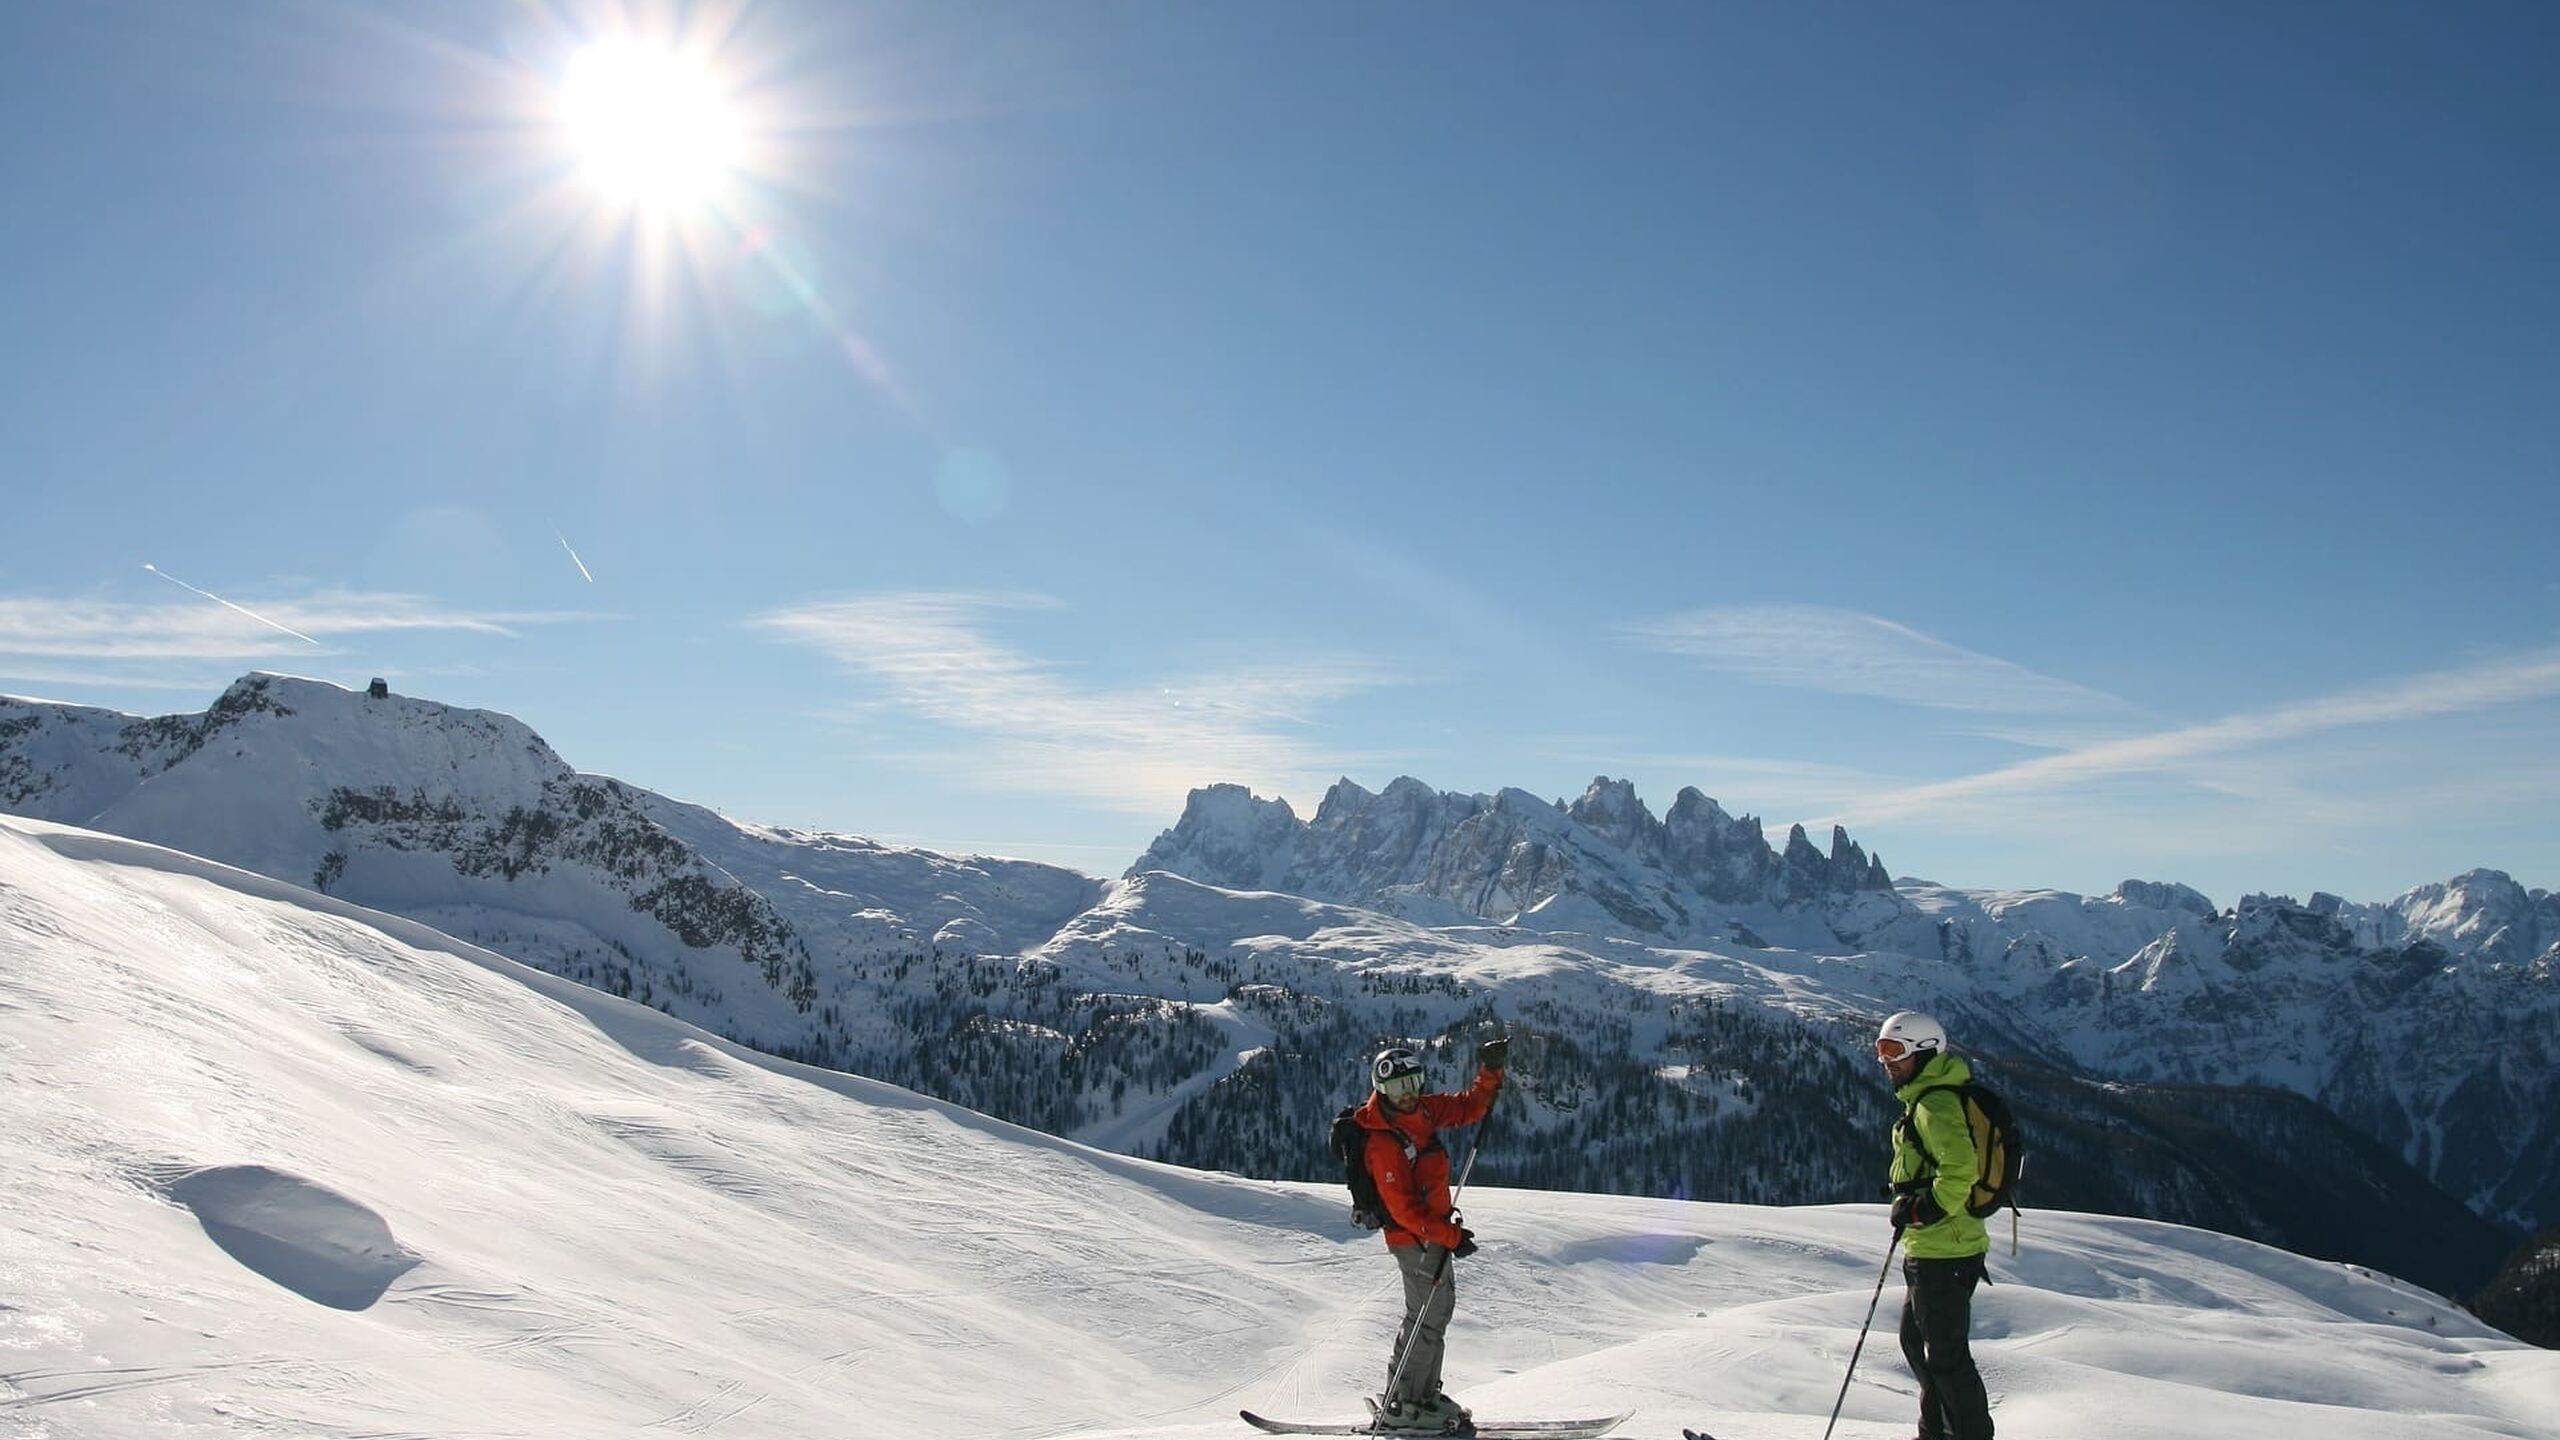 Ski safari in the Dolomites